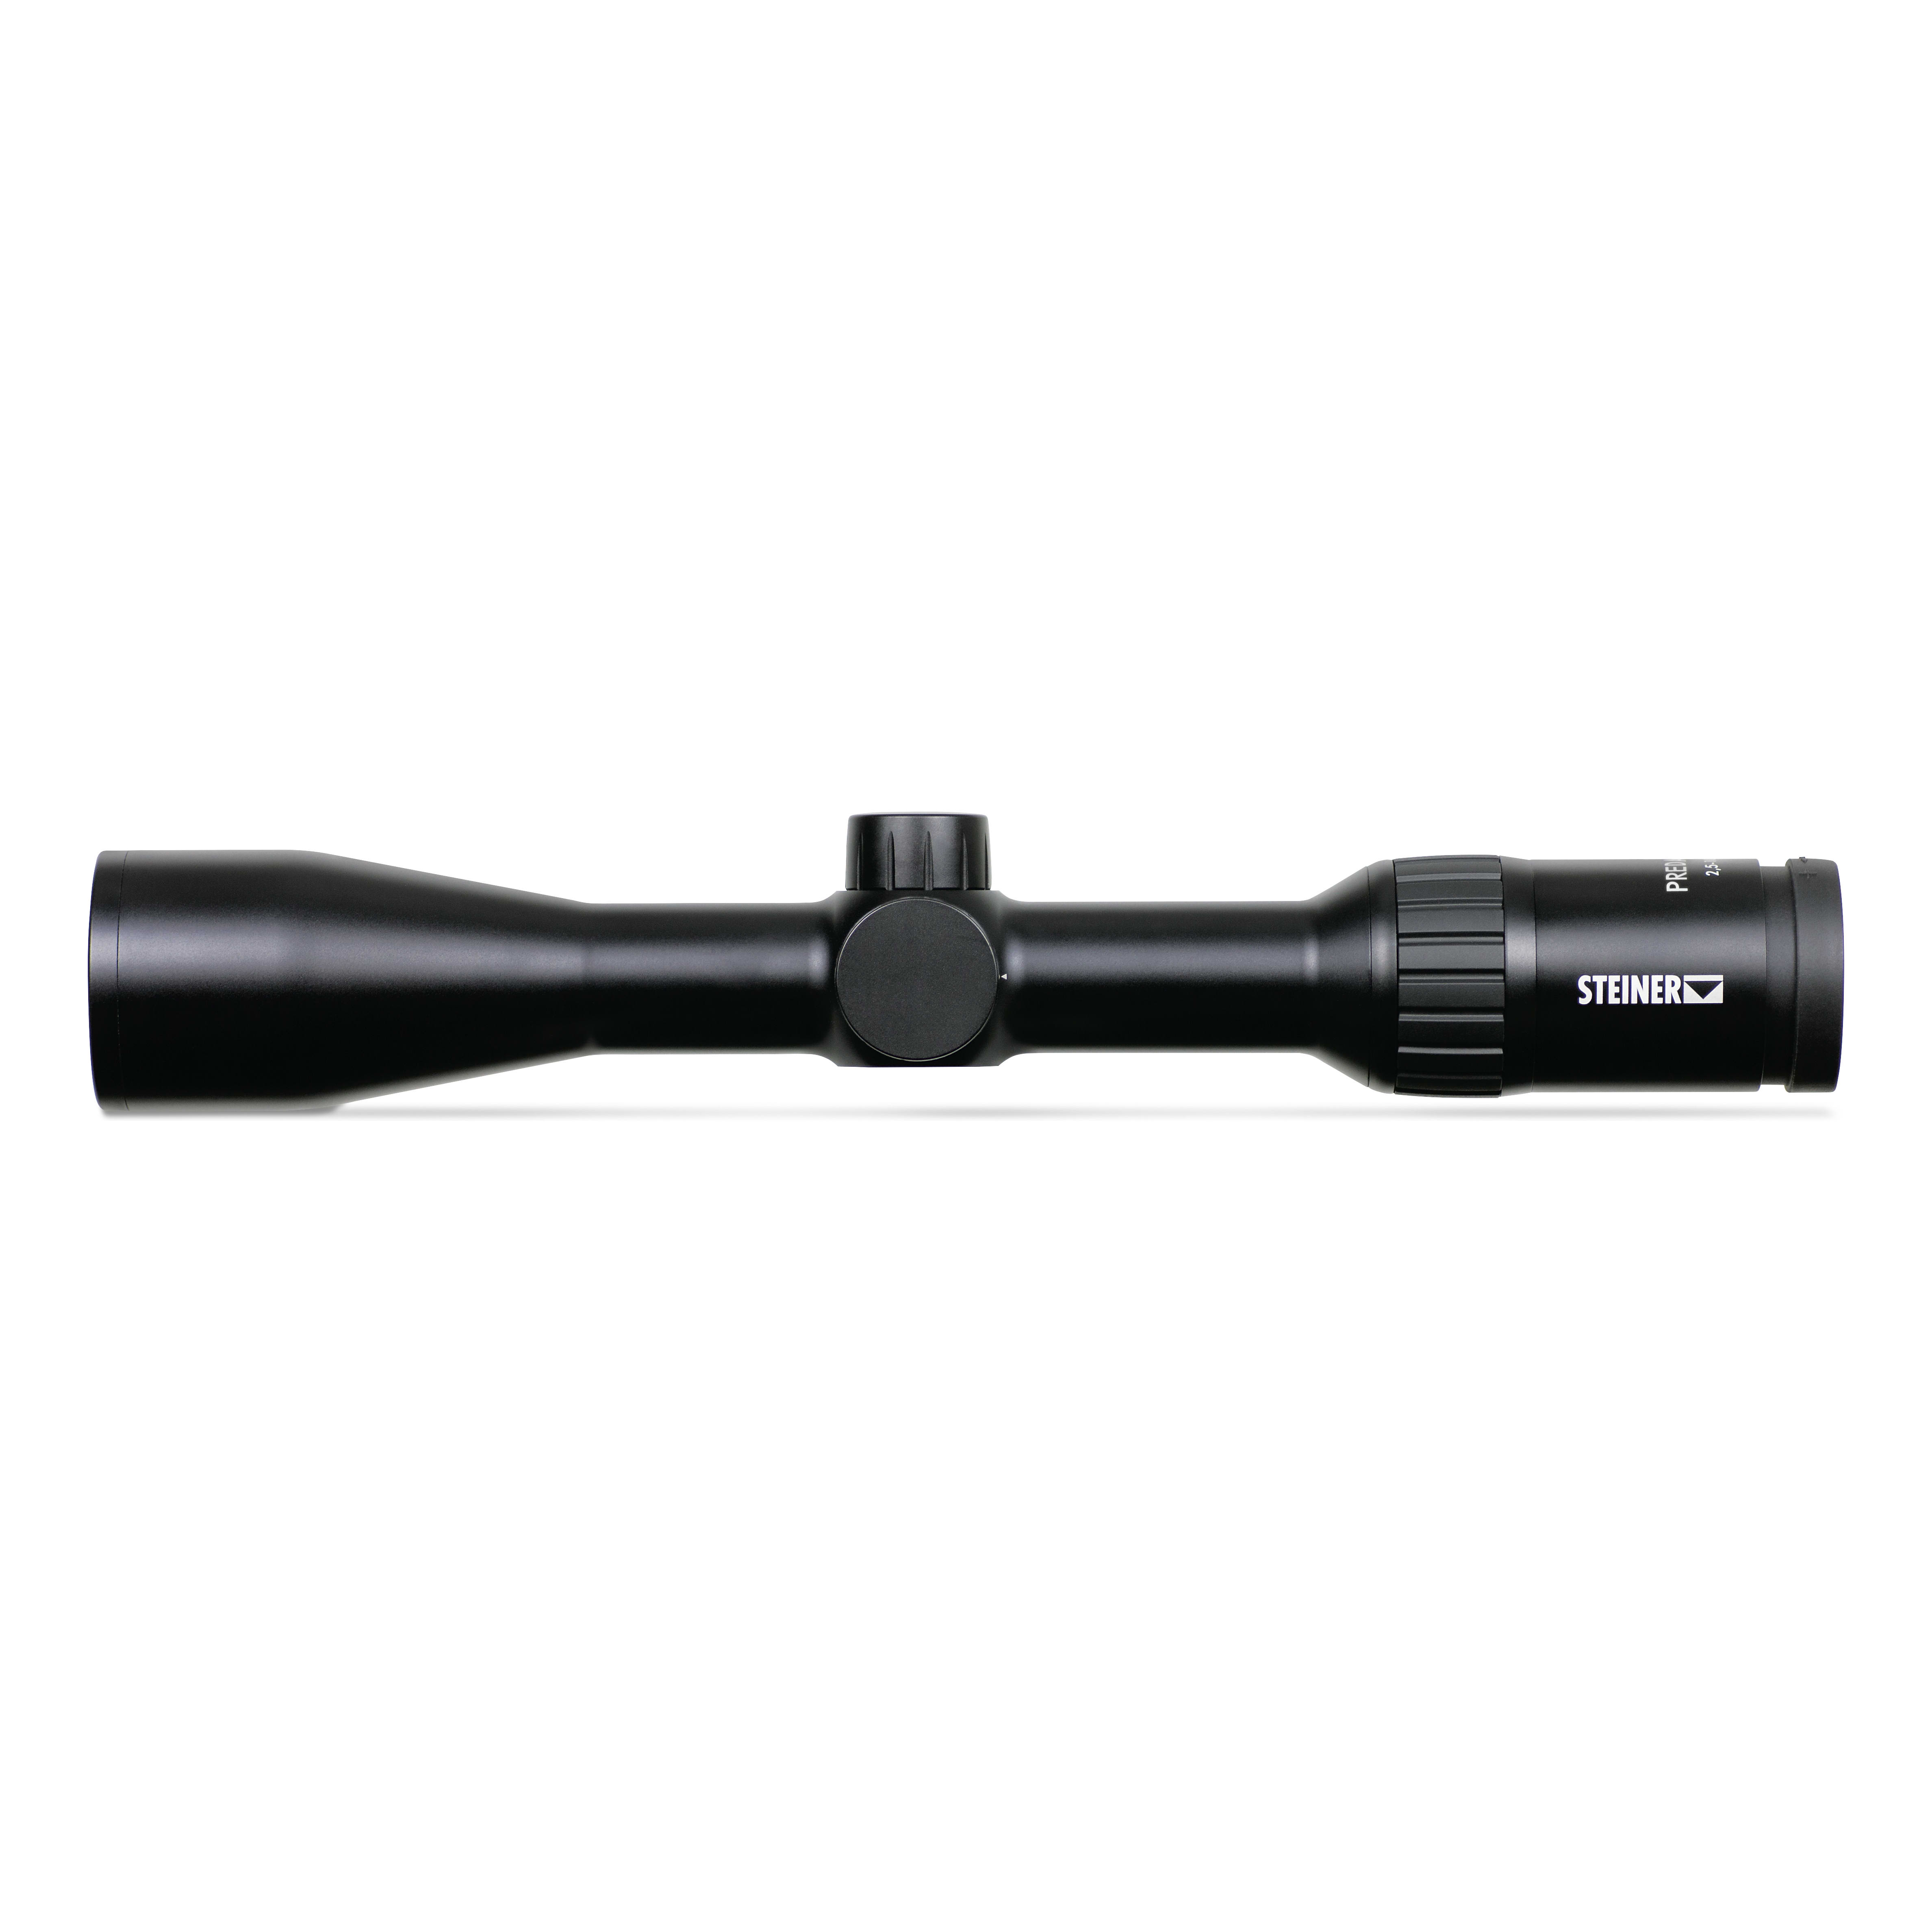 Steiner® Predator 4 Riflescopes - 2.5-10x42mm